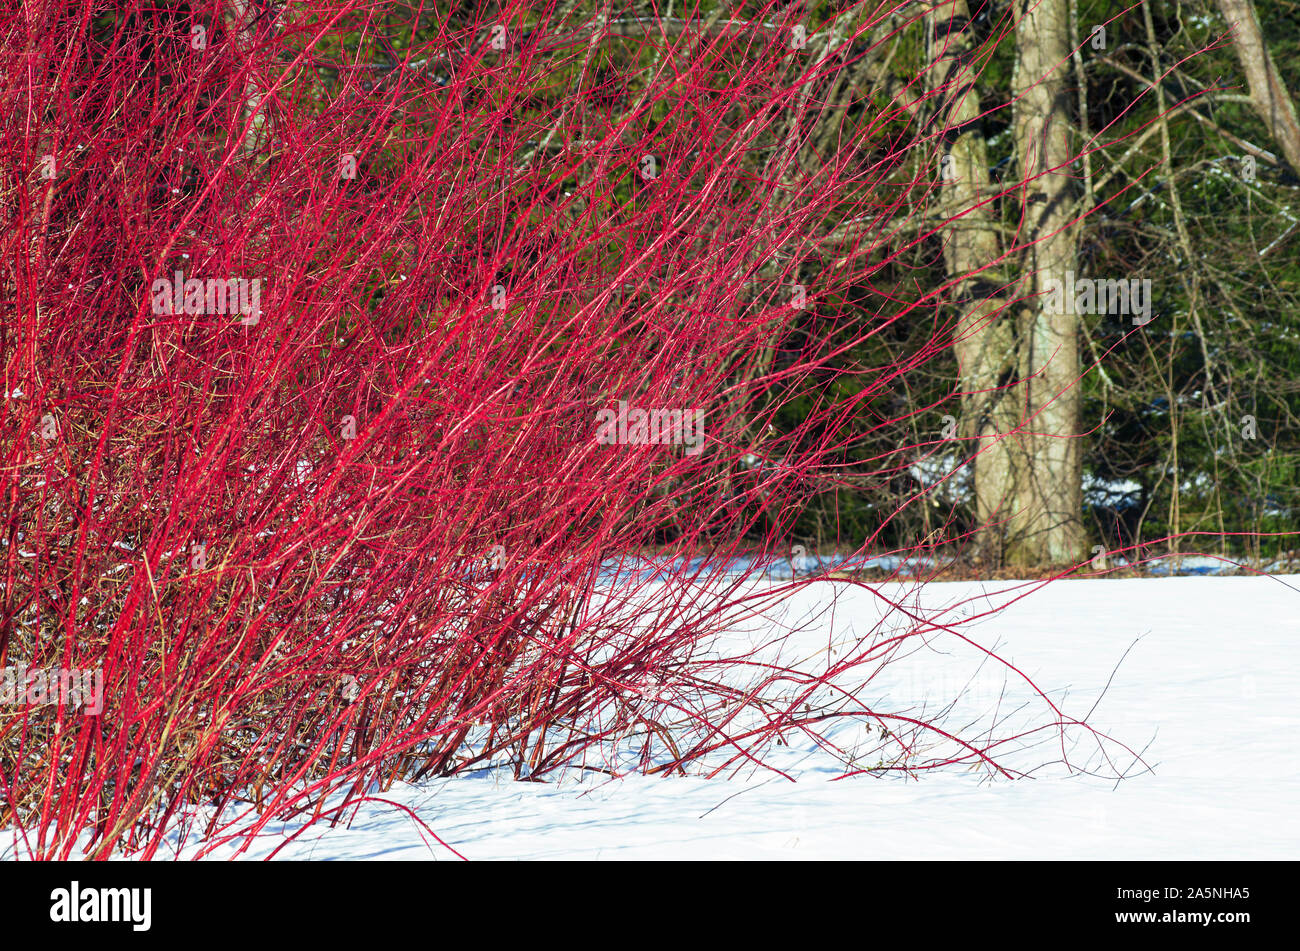 Paesaggio invernale con un arbusto di salice rosso con lunghe aste tra la neve Foto Stock